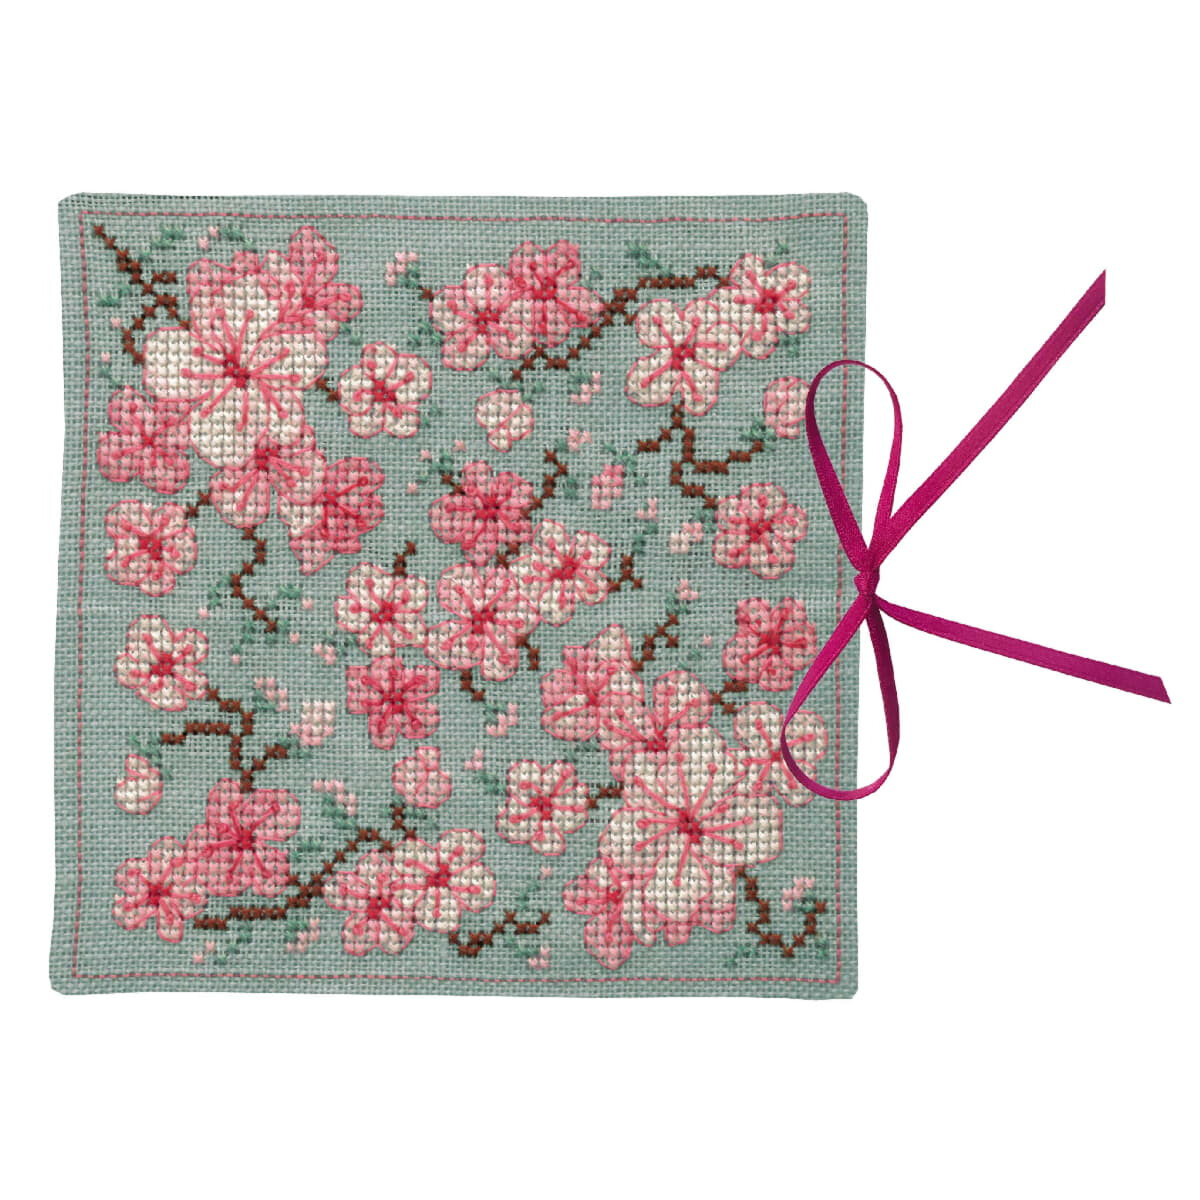 Le Bonheur des Dames needle case counted cross stitch kit...